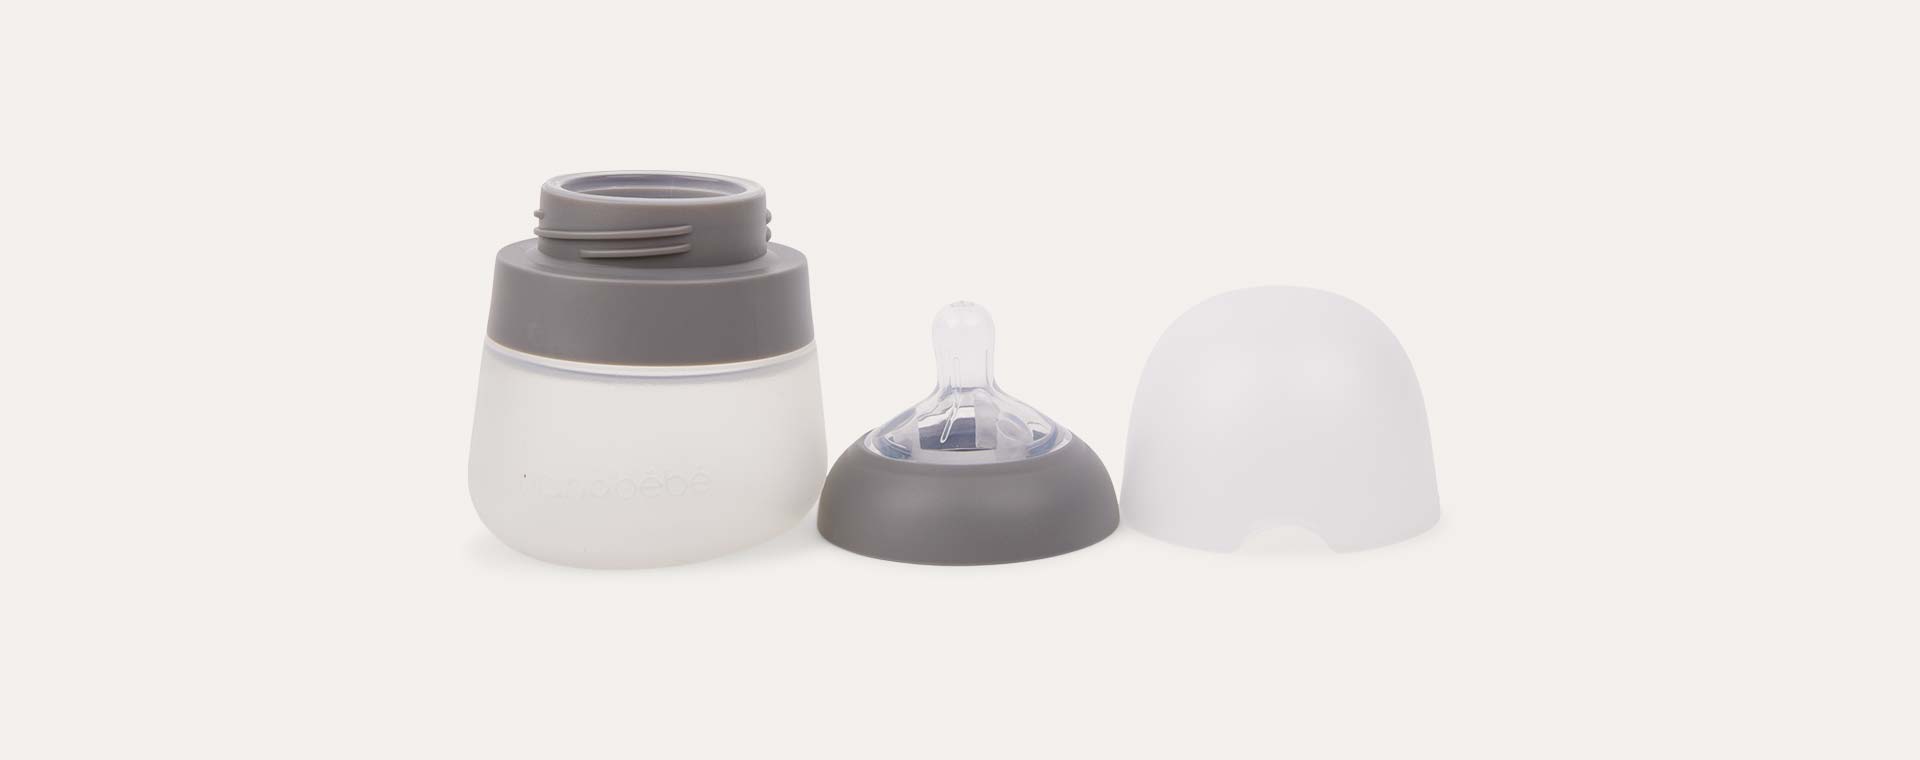 Grey nanobébé 3-Pack Silicone Baby Bottle 150ml